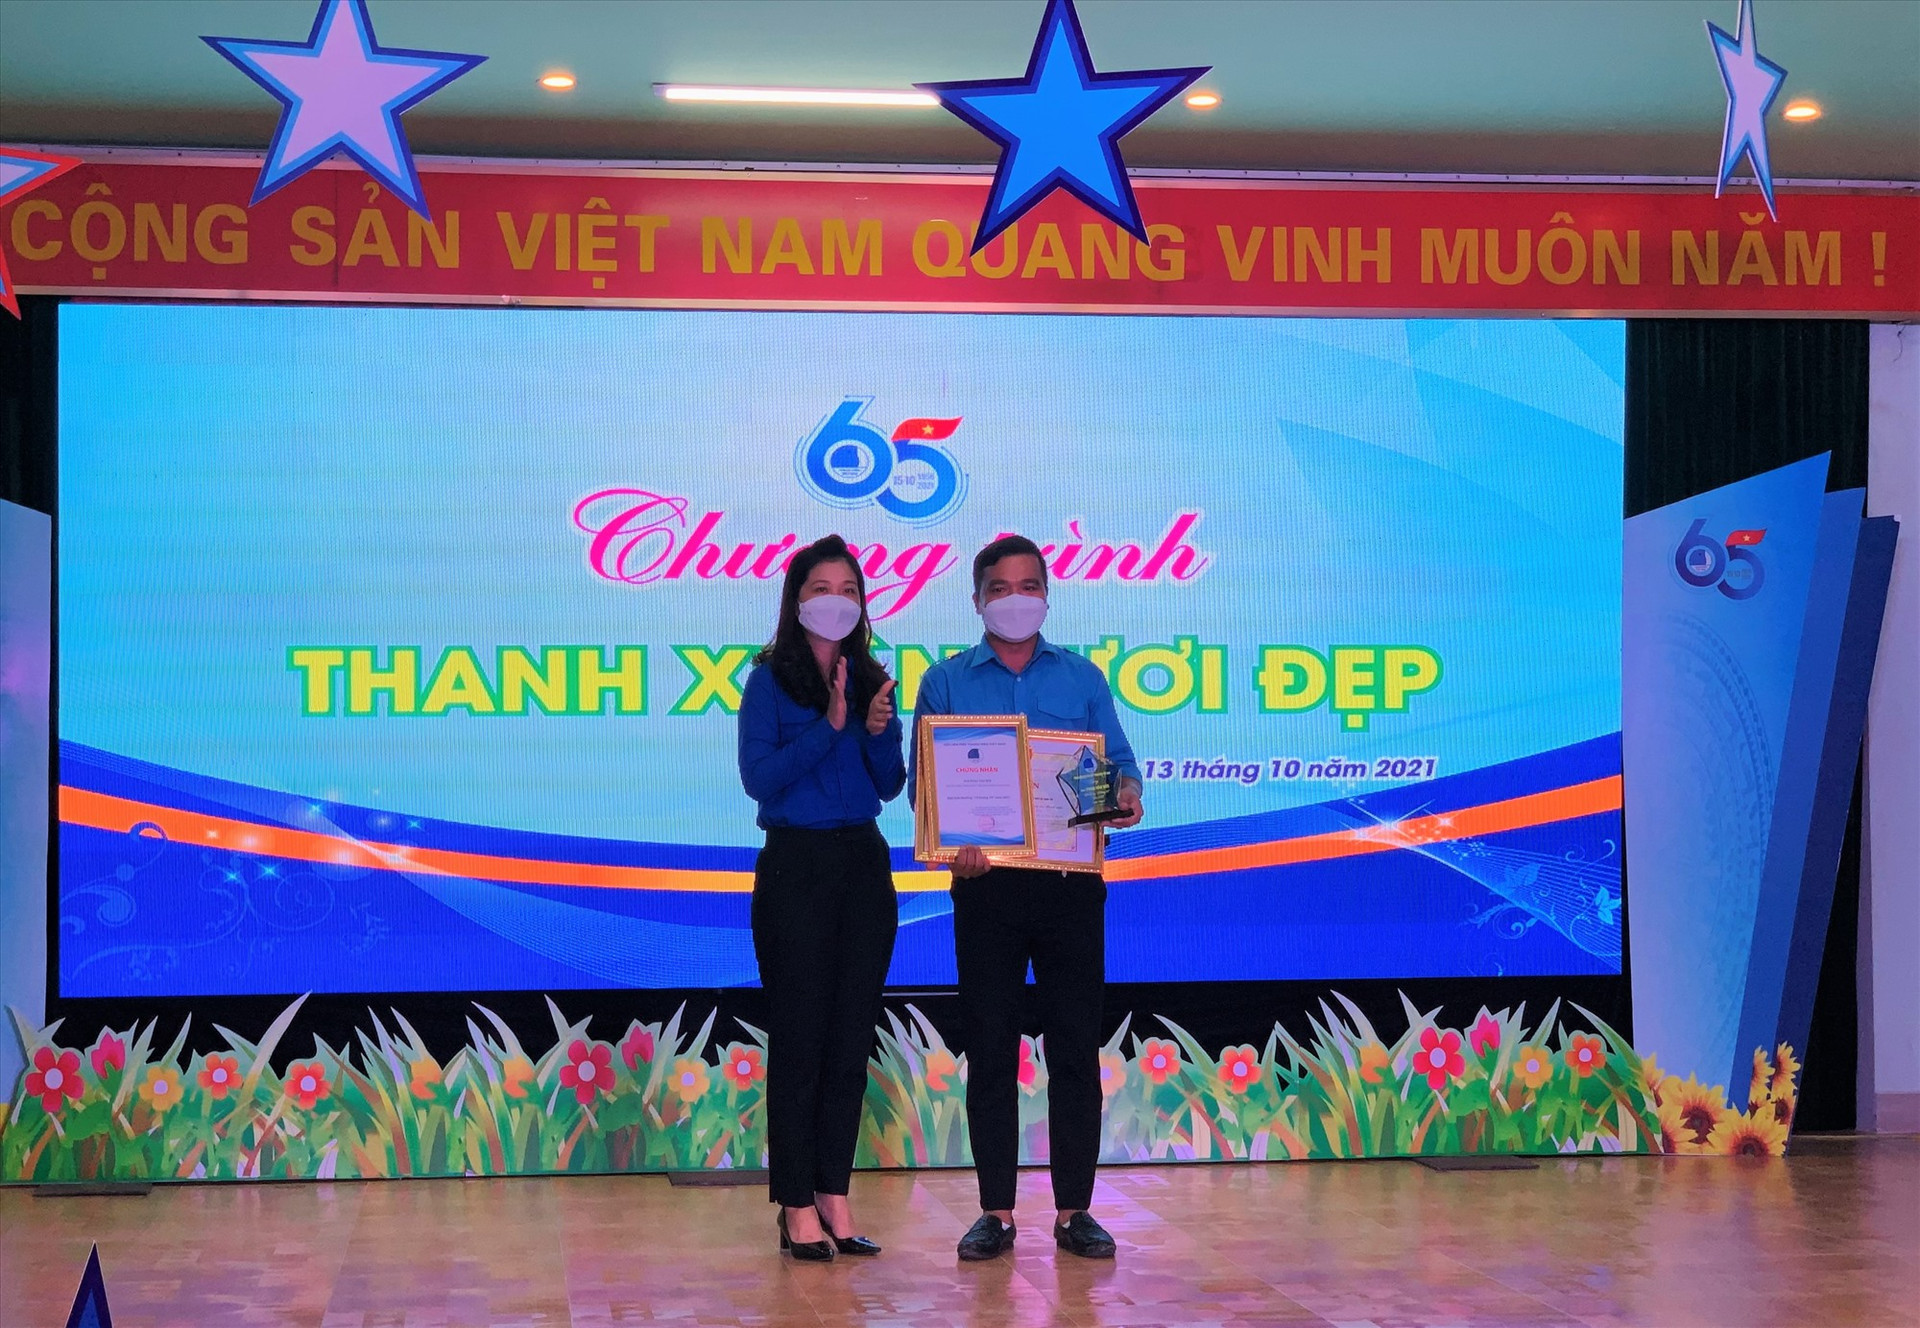 Bí thư Tỉnh đoàn Phạm Thị Thanh trao giải thưởng “15 tháng 10” cho anh Phan Văn Đức. Ảnh: THU VUI